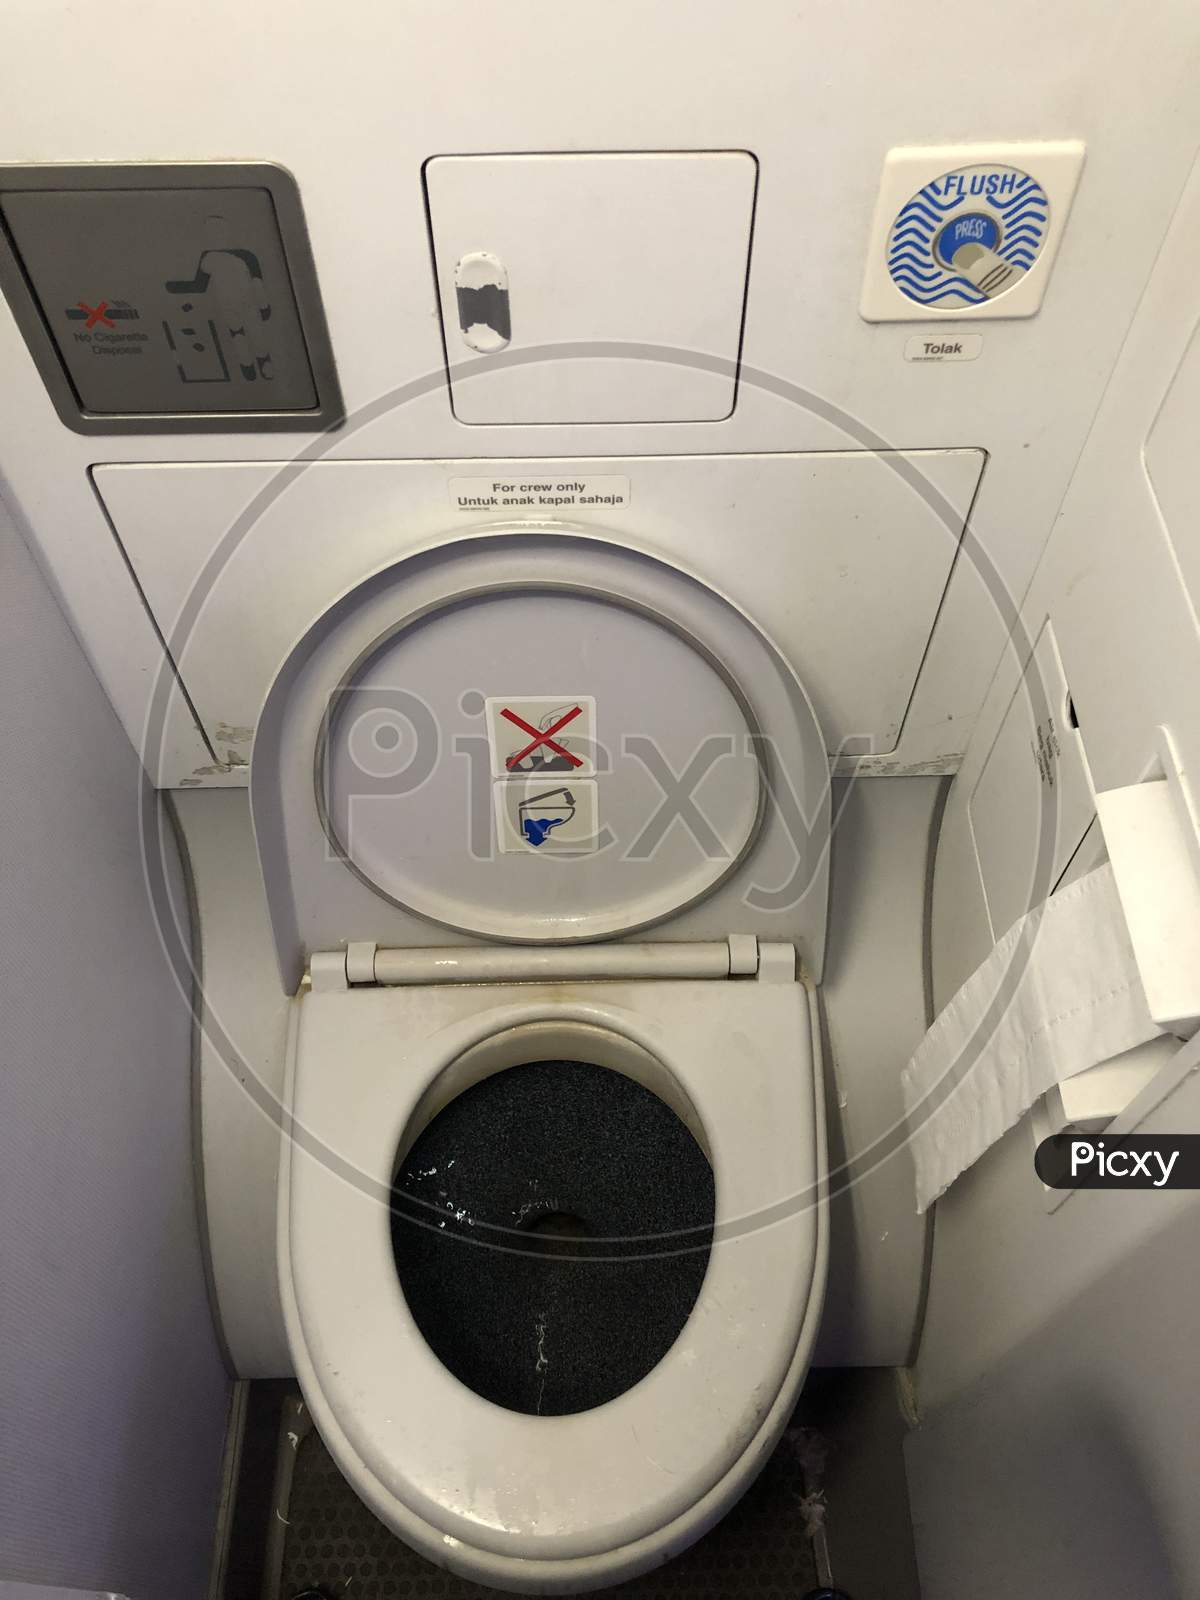 Toilet in a Flight.